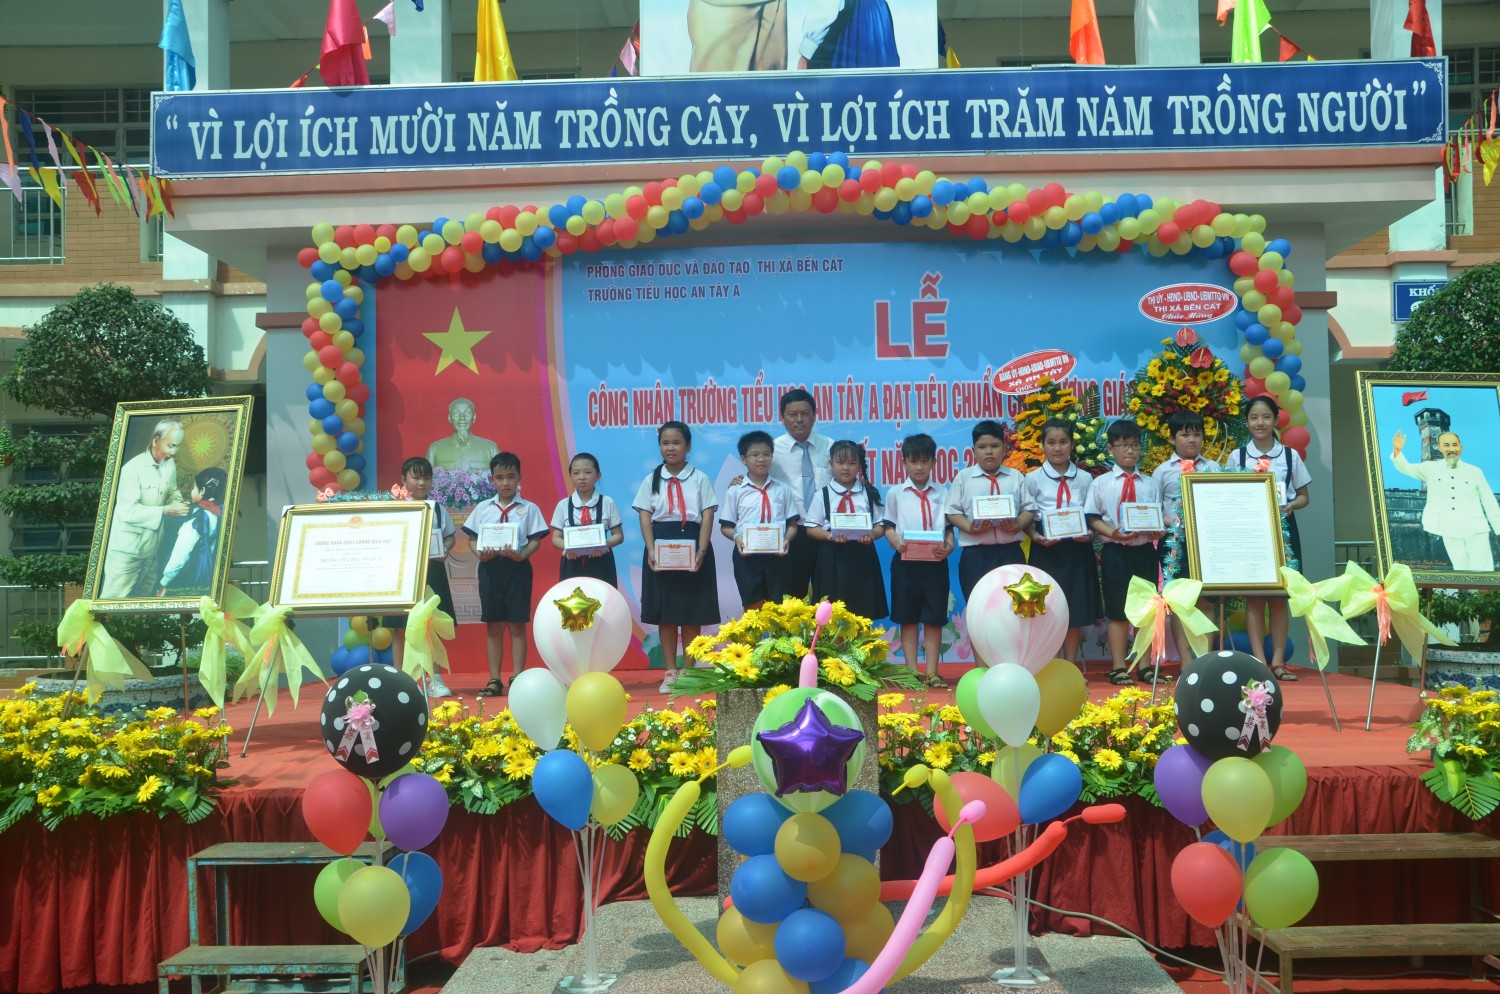 Ông Trần Văn Long – Phó Trưởng phòng Giáo dục & Đào tạo thị xã Bến Cát trao Giấy khen và quà cho học sinh